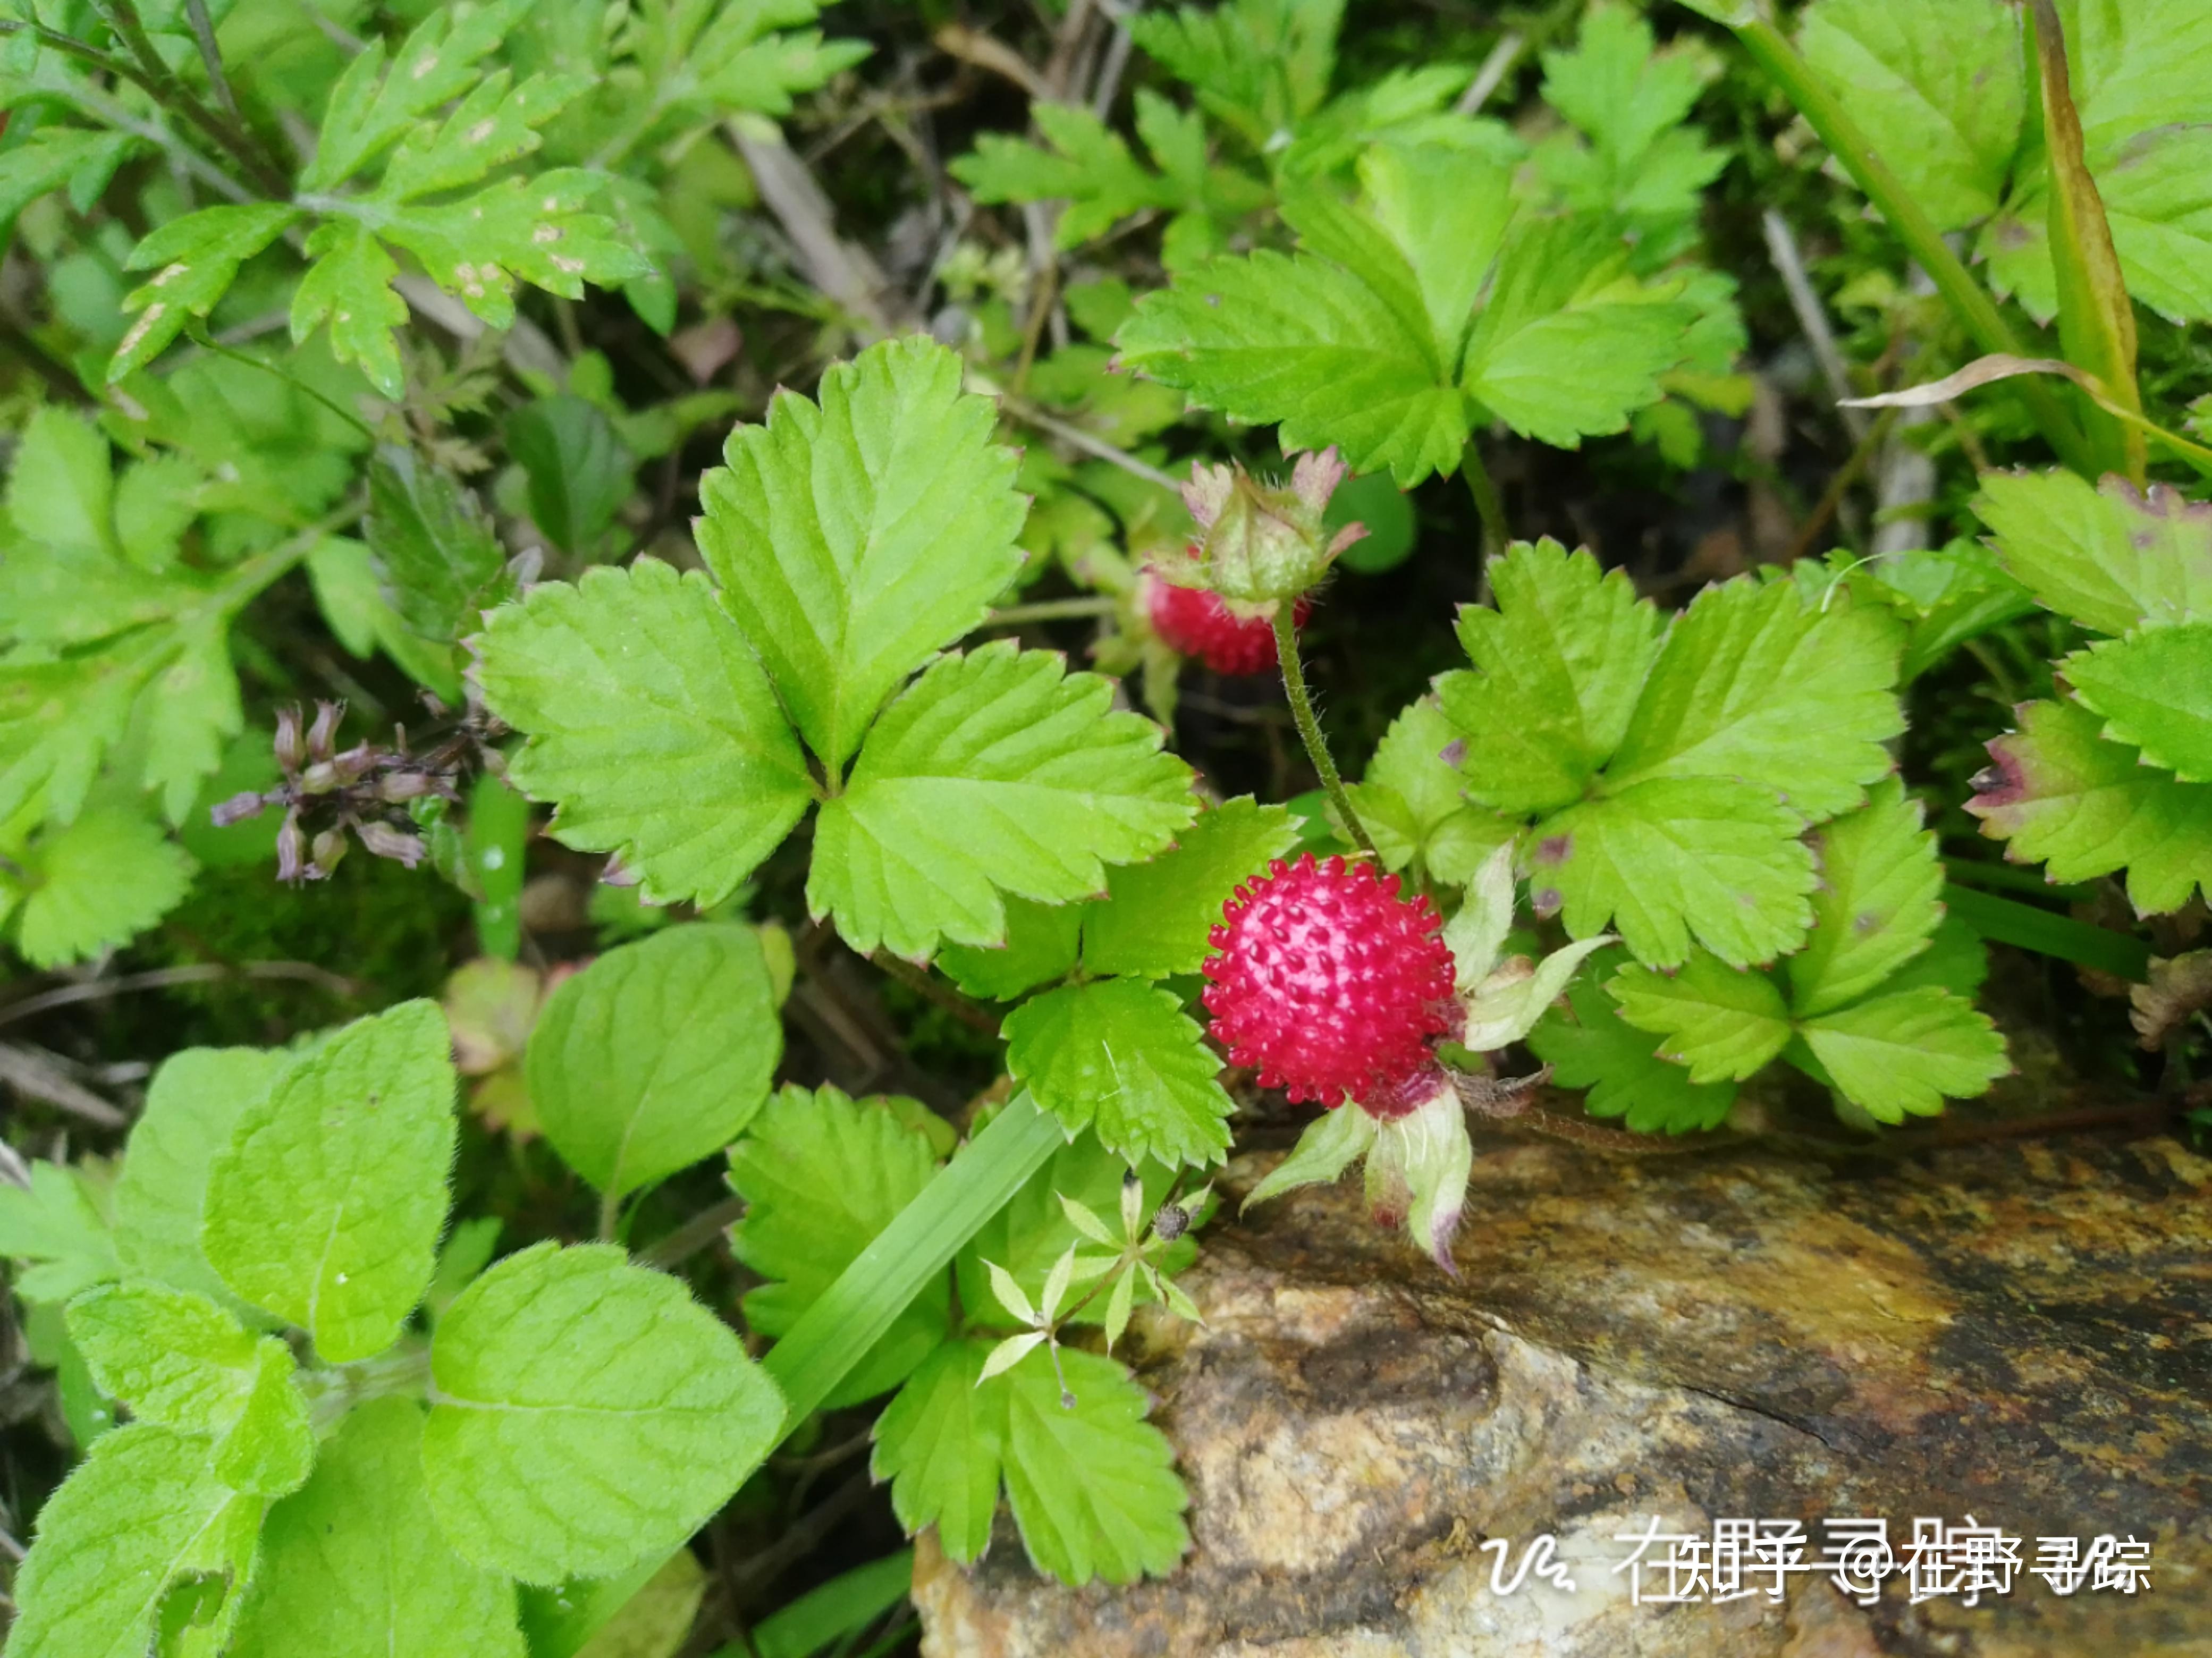 野外常见的这种红果子像野草莓,老人们常说是蛇吃的水果,有毒,小孩